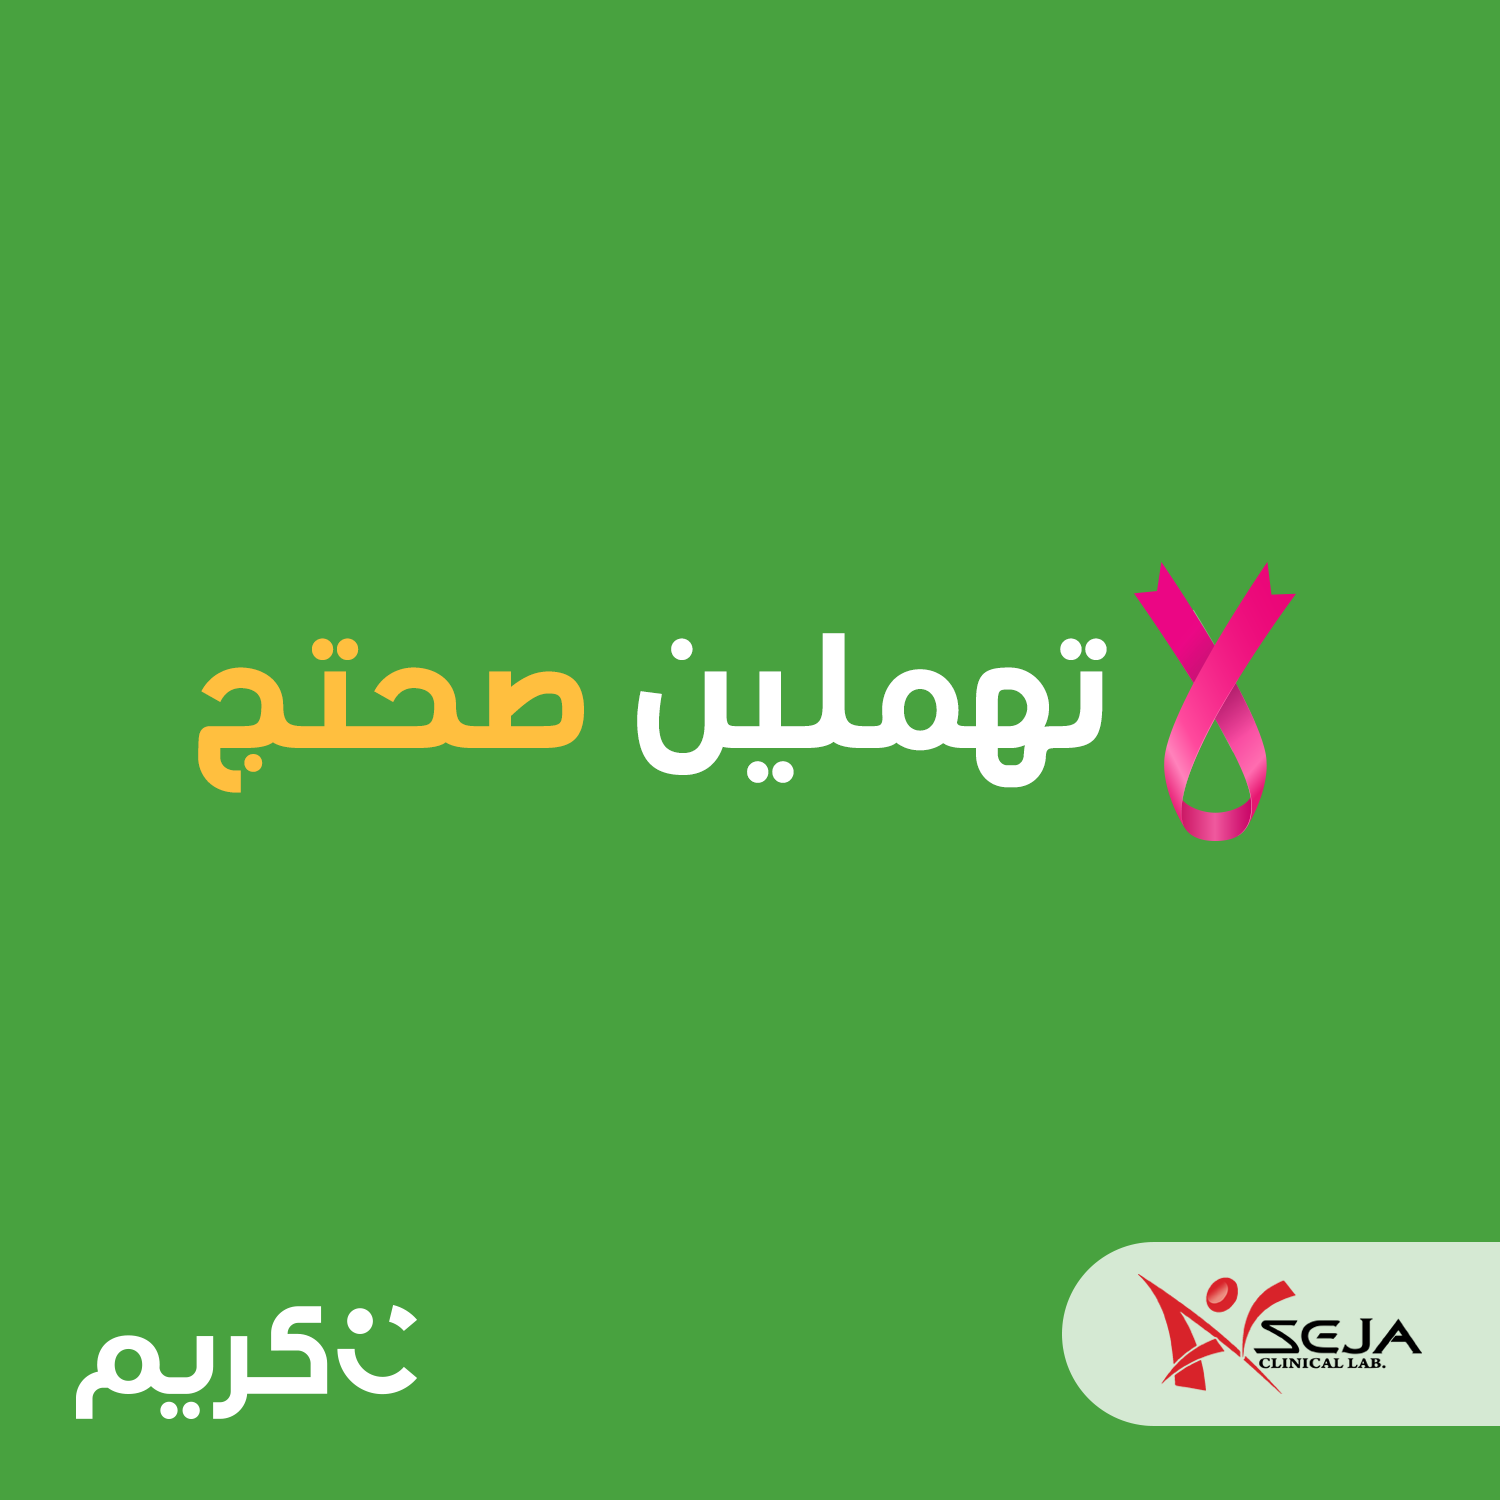 شركة “كريم” تطلق حملة للتوعية حول سرطان الثدي وأهمية الفحص المبكر